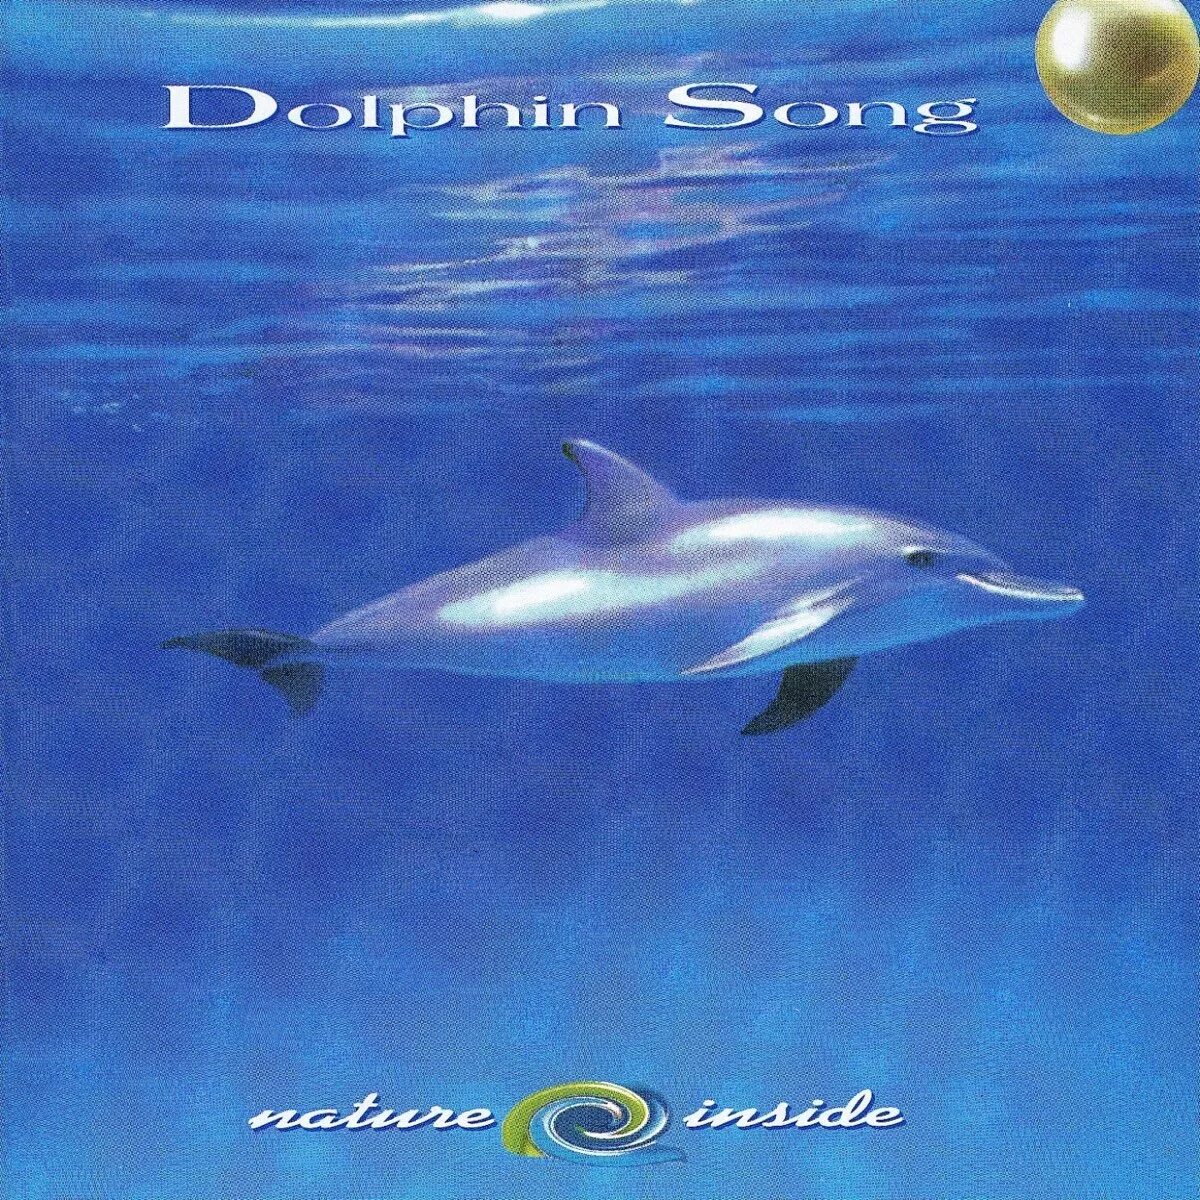 Люди дельфины песня. Дельфин альбомы. Дельфин обложки альбомов. Альбом Дельфинчик. Альбом дельфина Эндрю.